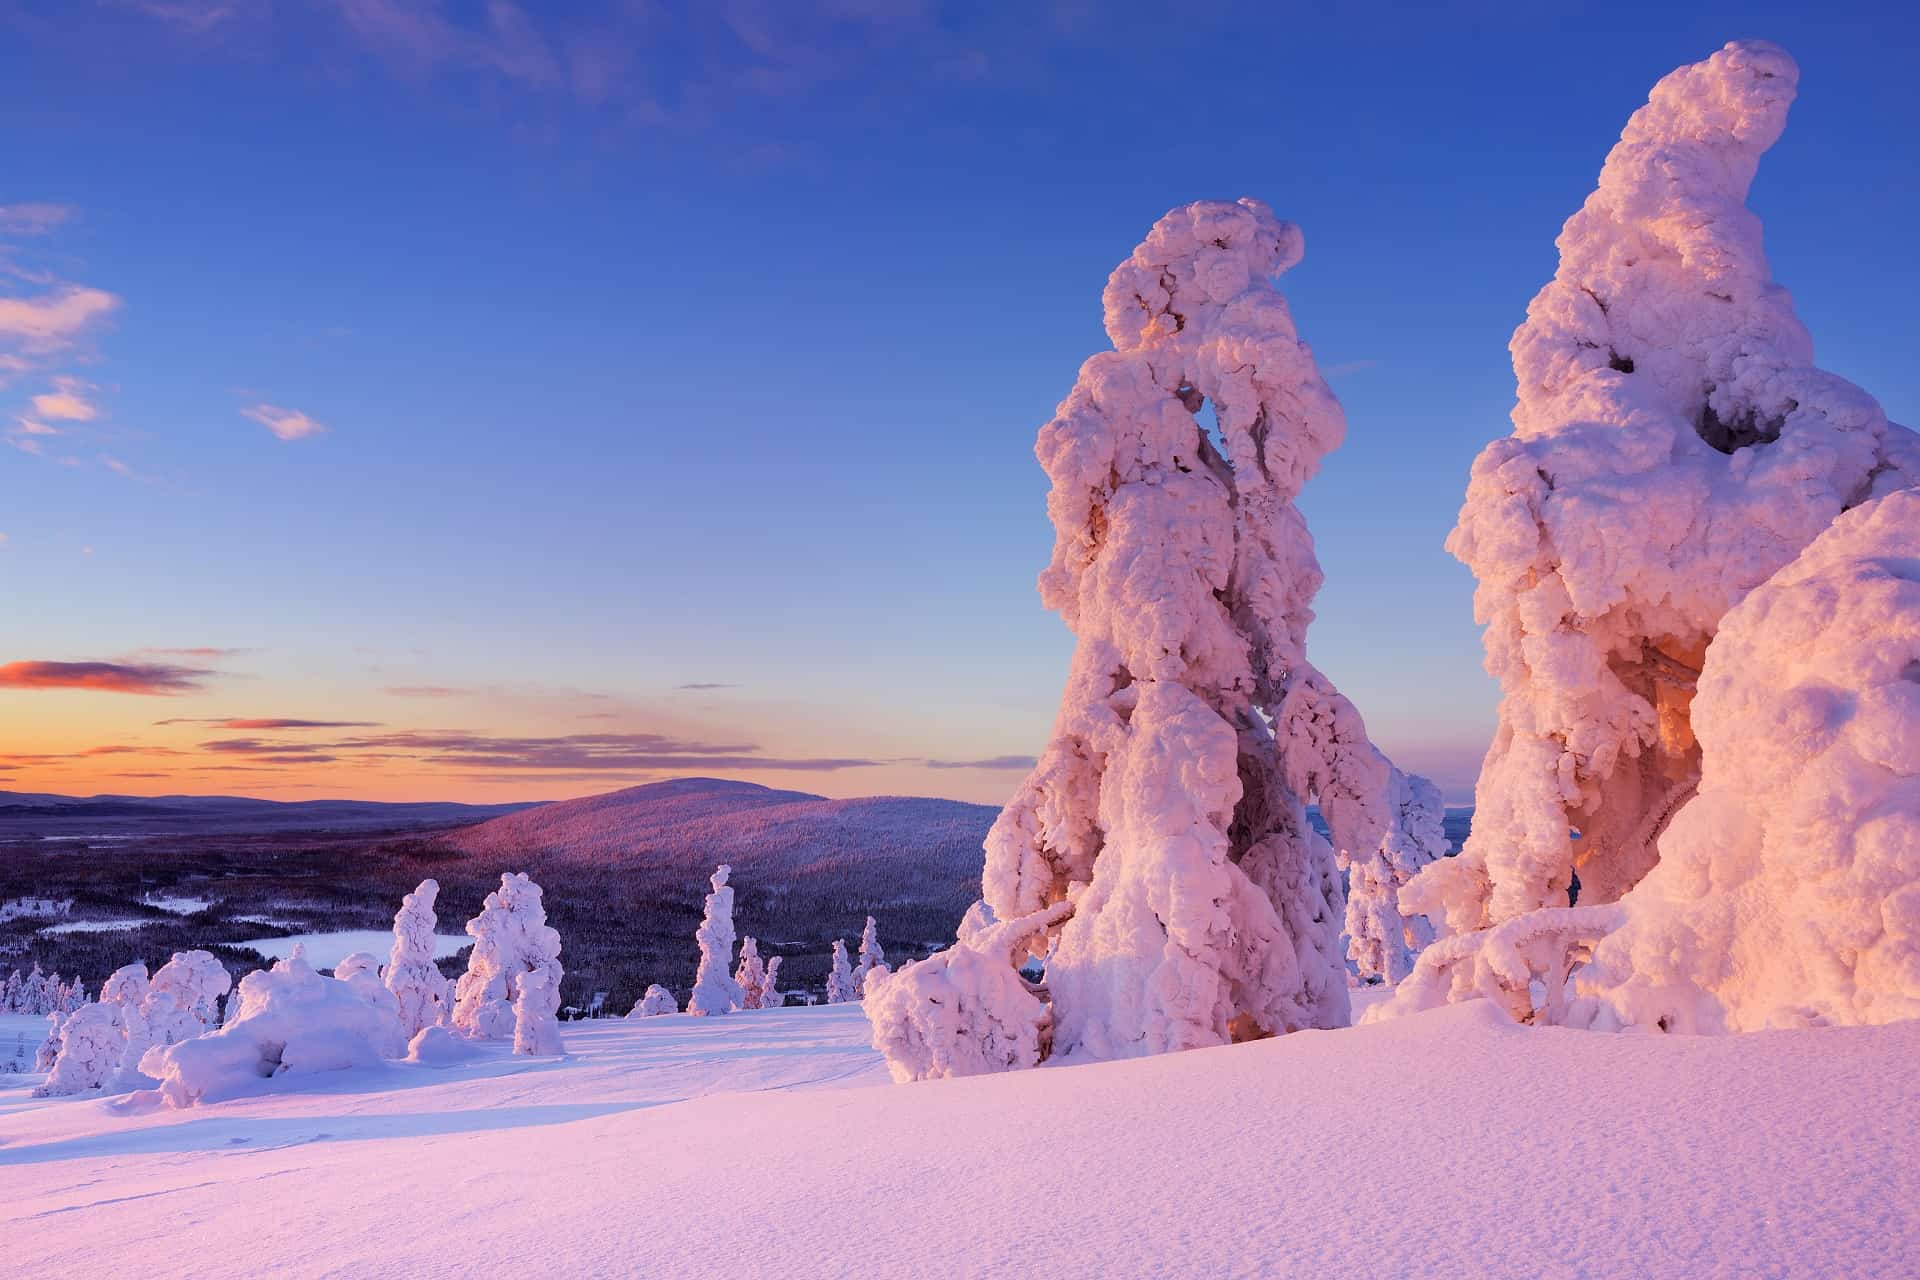 Visiter la Laponie finlandaise les lieux & activités incontournables